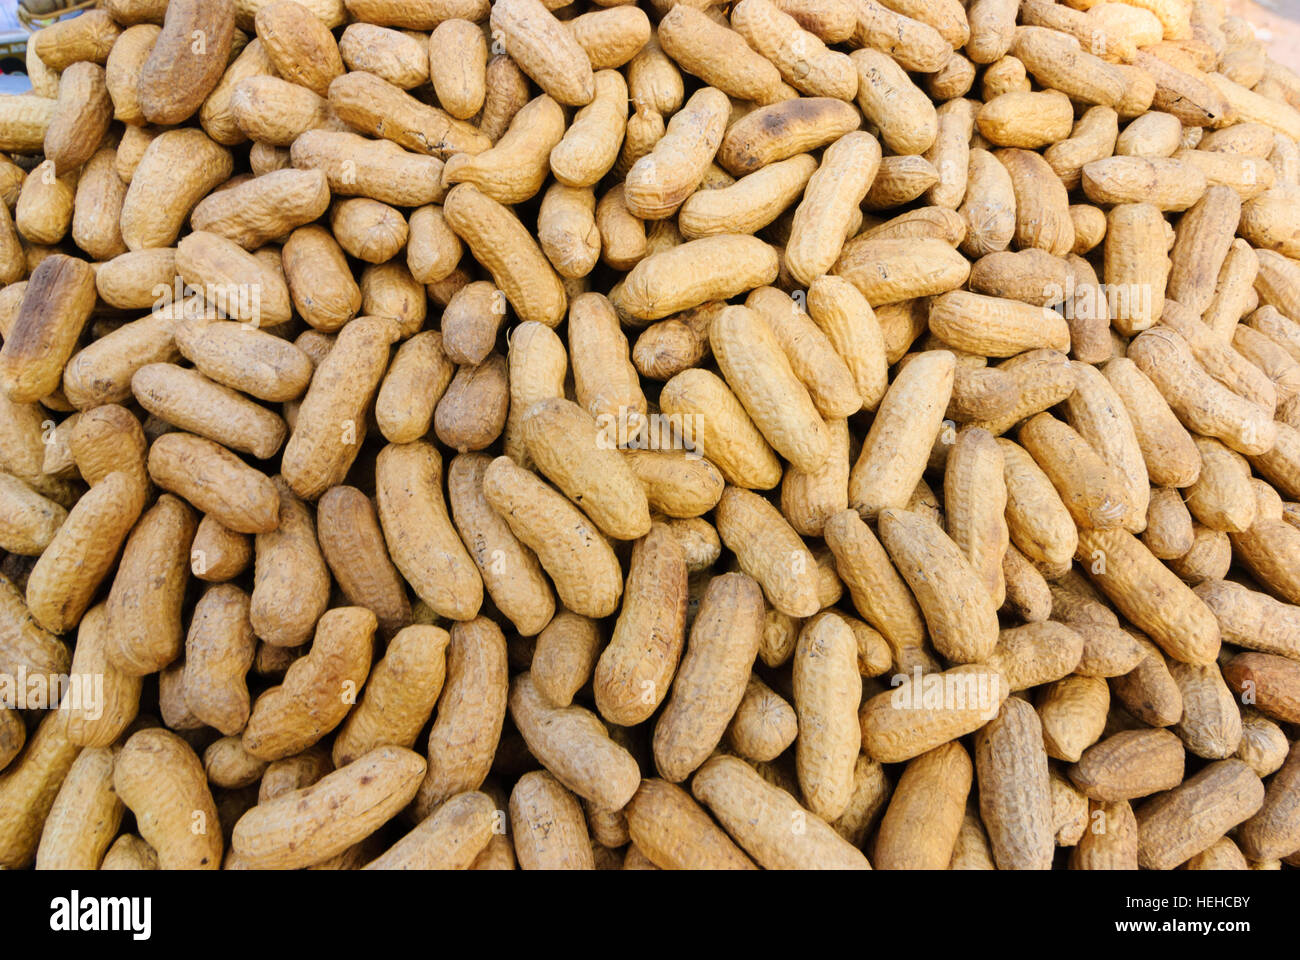 Dhaka: peanuts in shells, Dhaka Division, Bangladesh Stock Photo